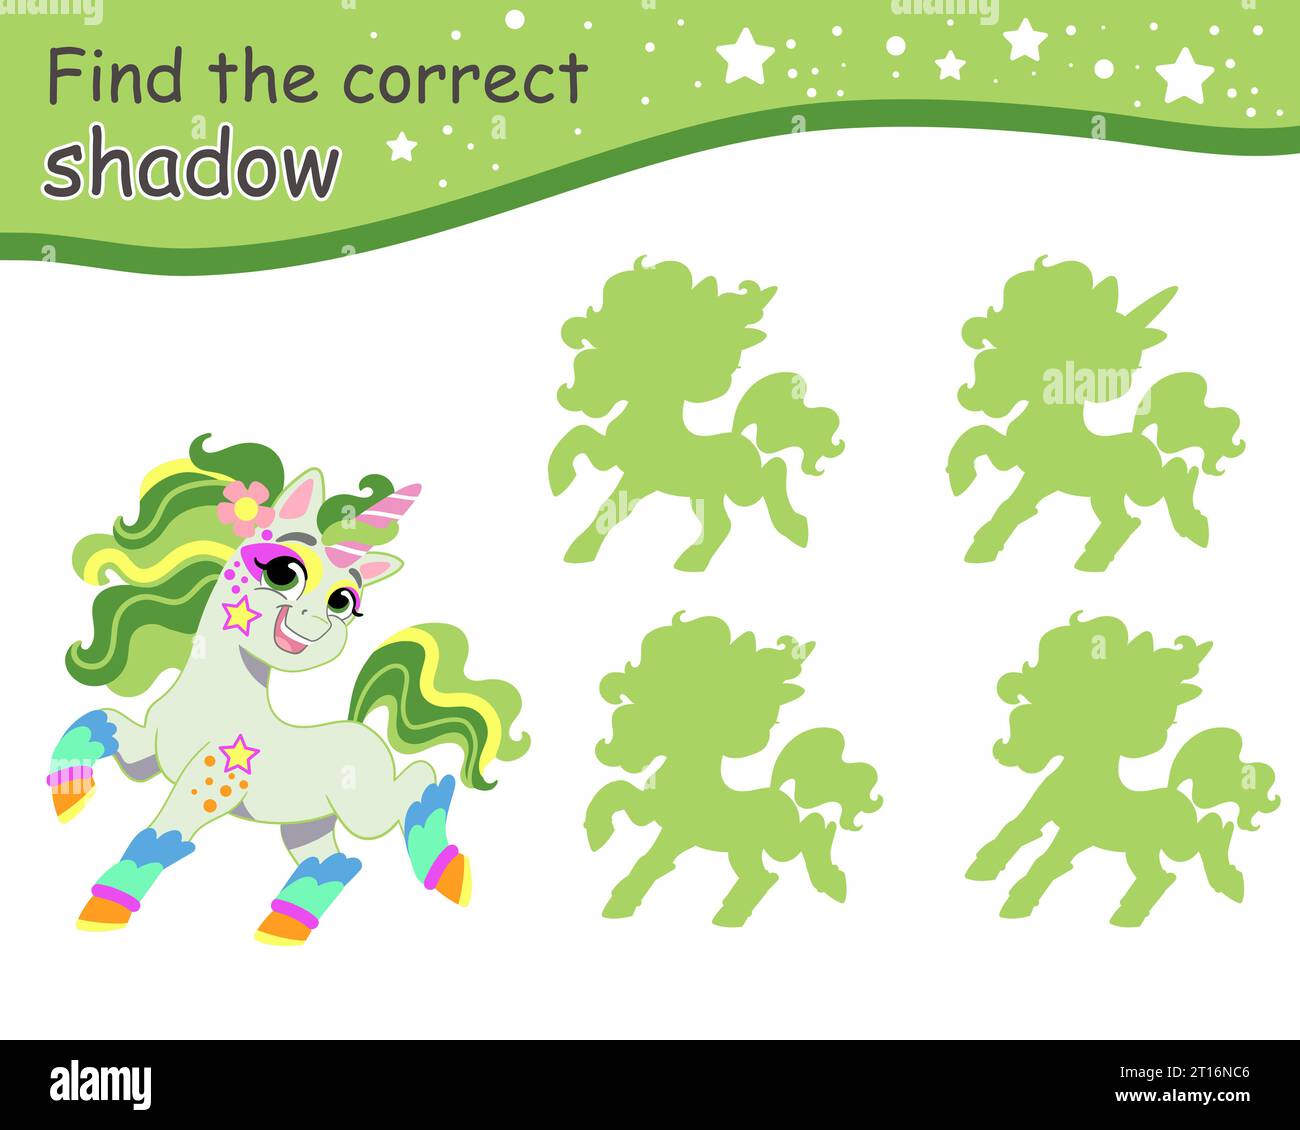 Suchen Sie den richtigen Schatten. Süßes, grünes, fröhliches Einhorn. Pädagogisches Matching-Spiel für Kinder mit Zeichentrickfigur. Aktivität, Logikspiel, Lernen Stock Vektor